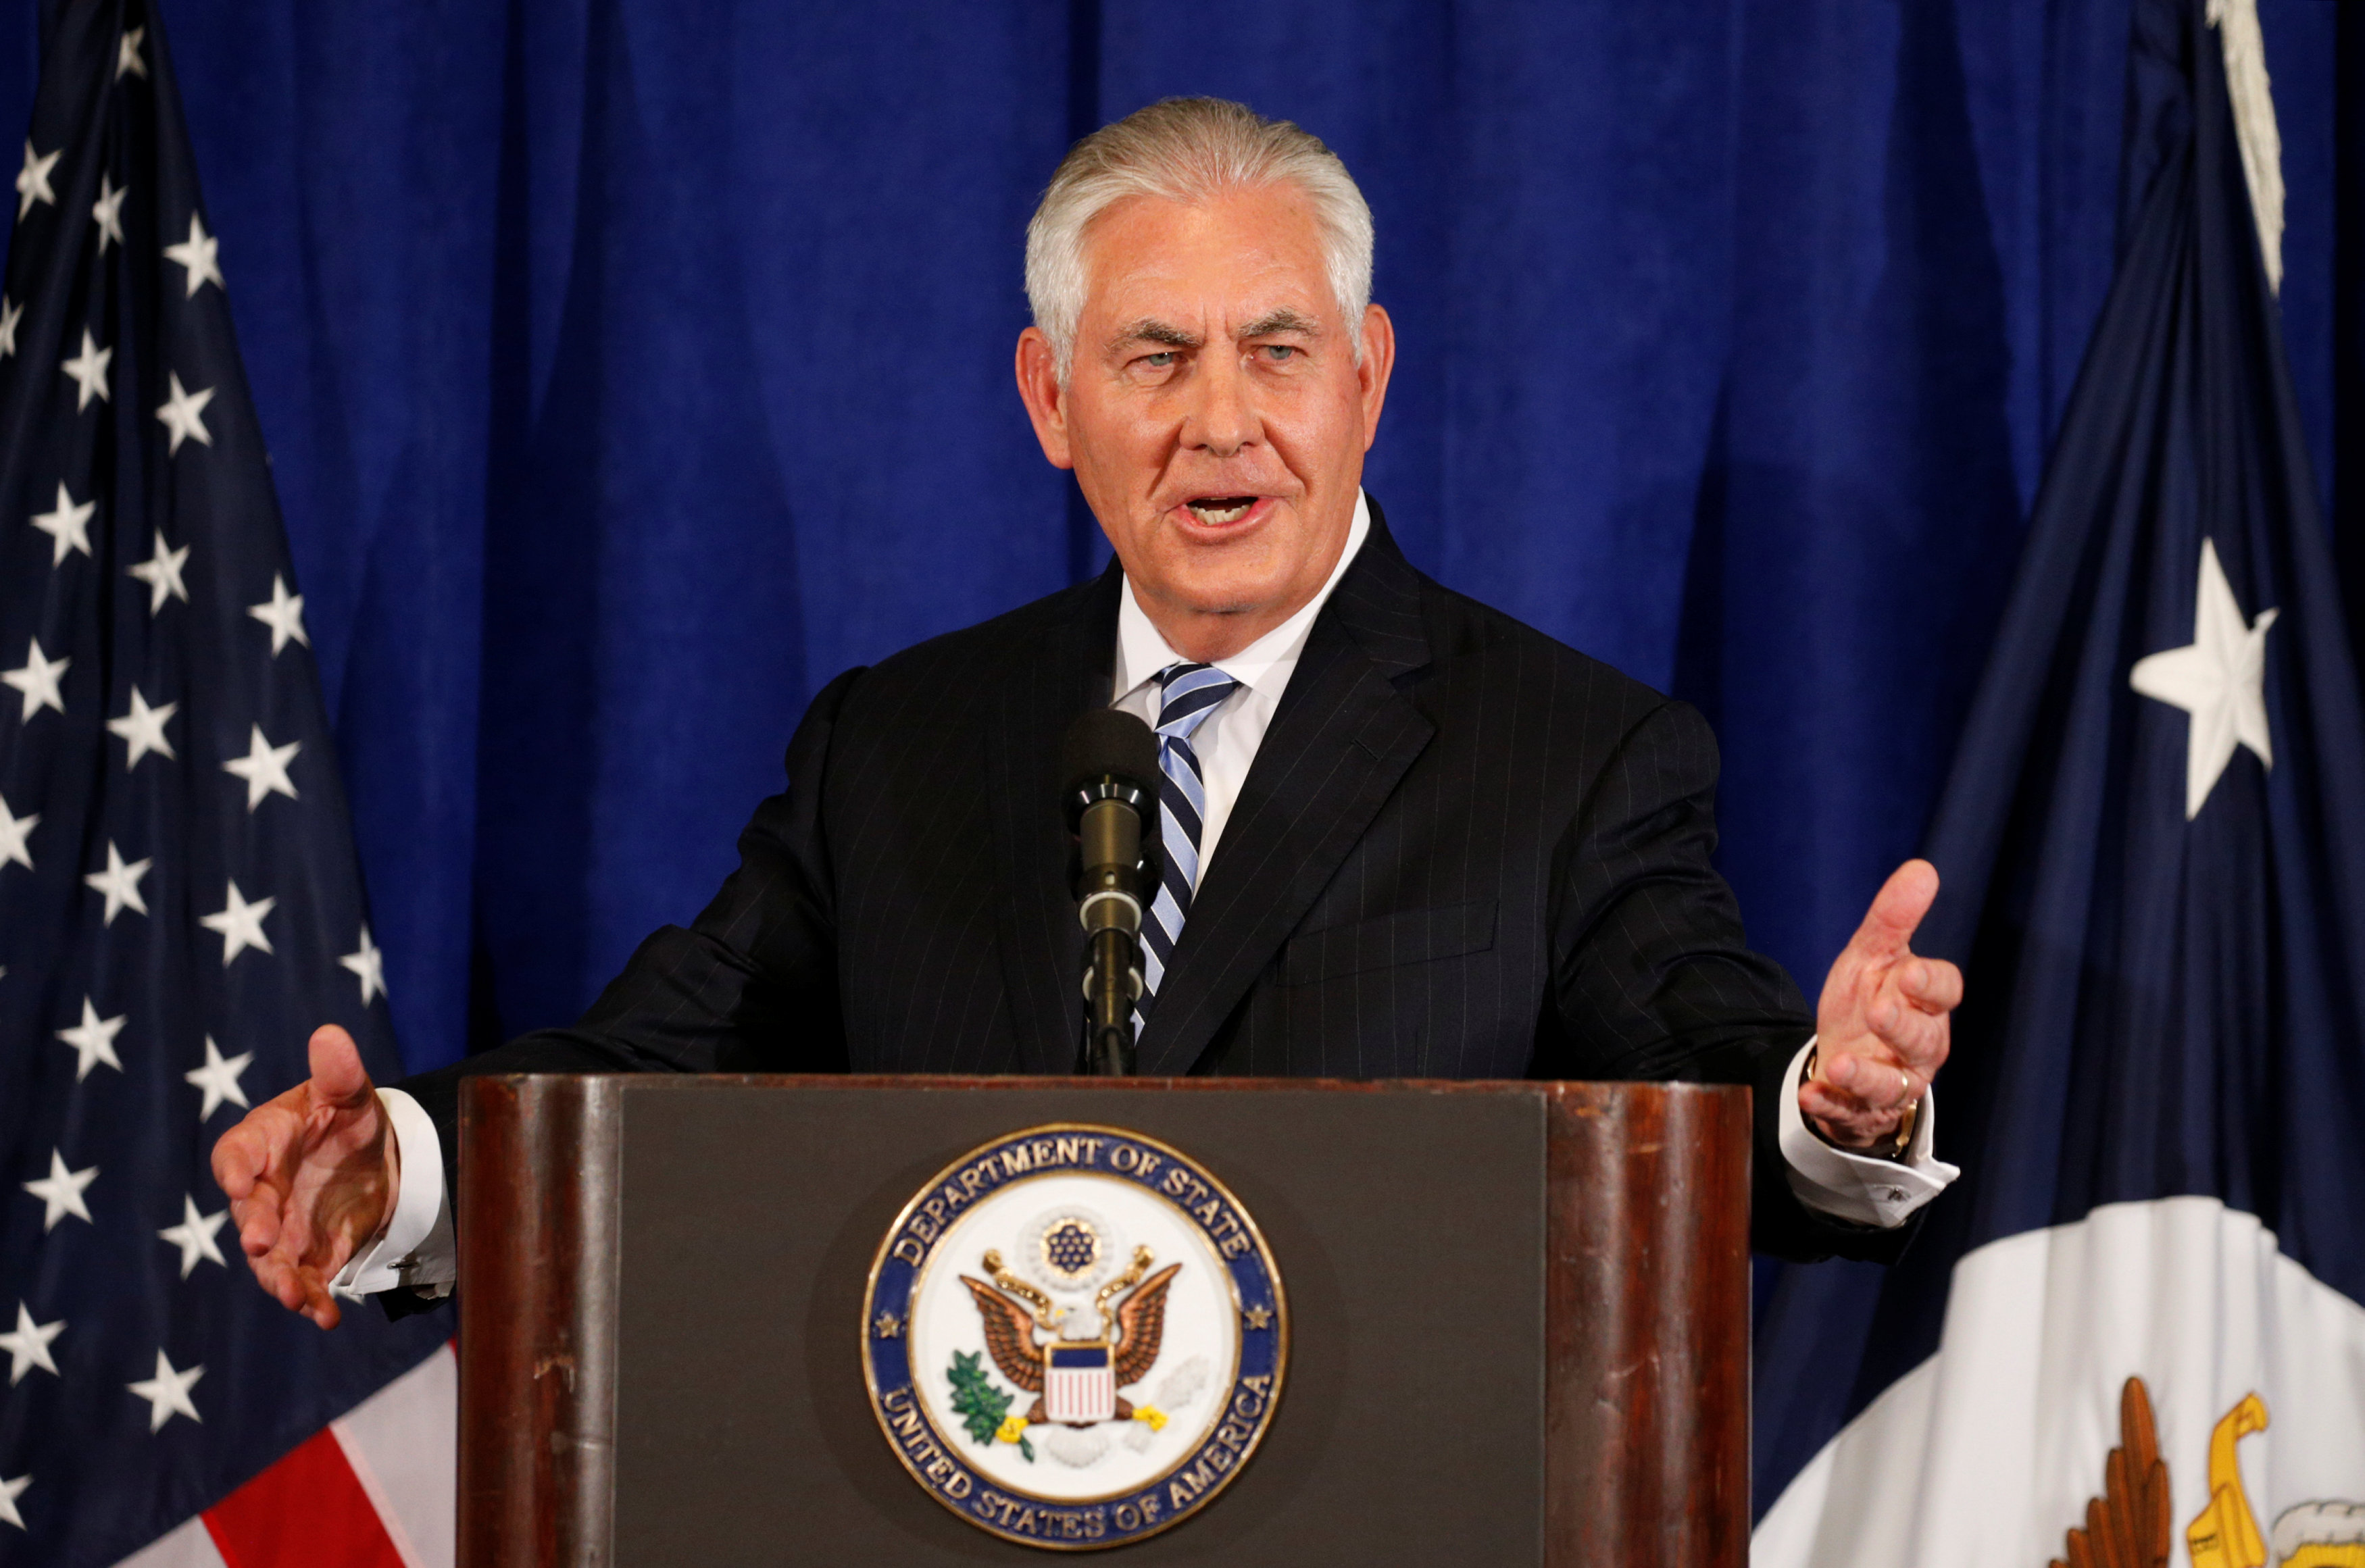 Trump endurecerá relación con Irán, pero no dejará pacto nuclear: Tillerson